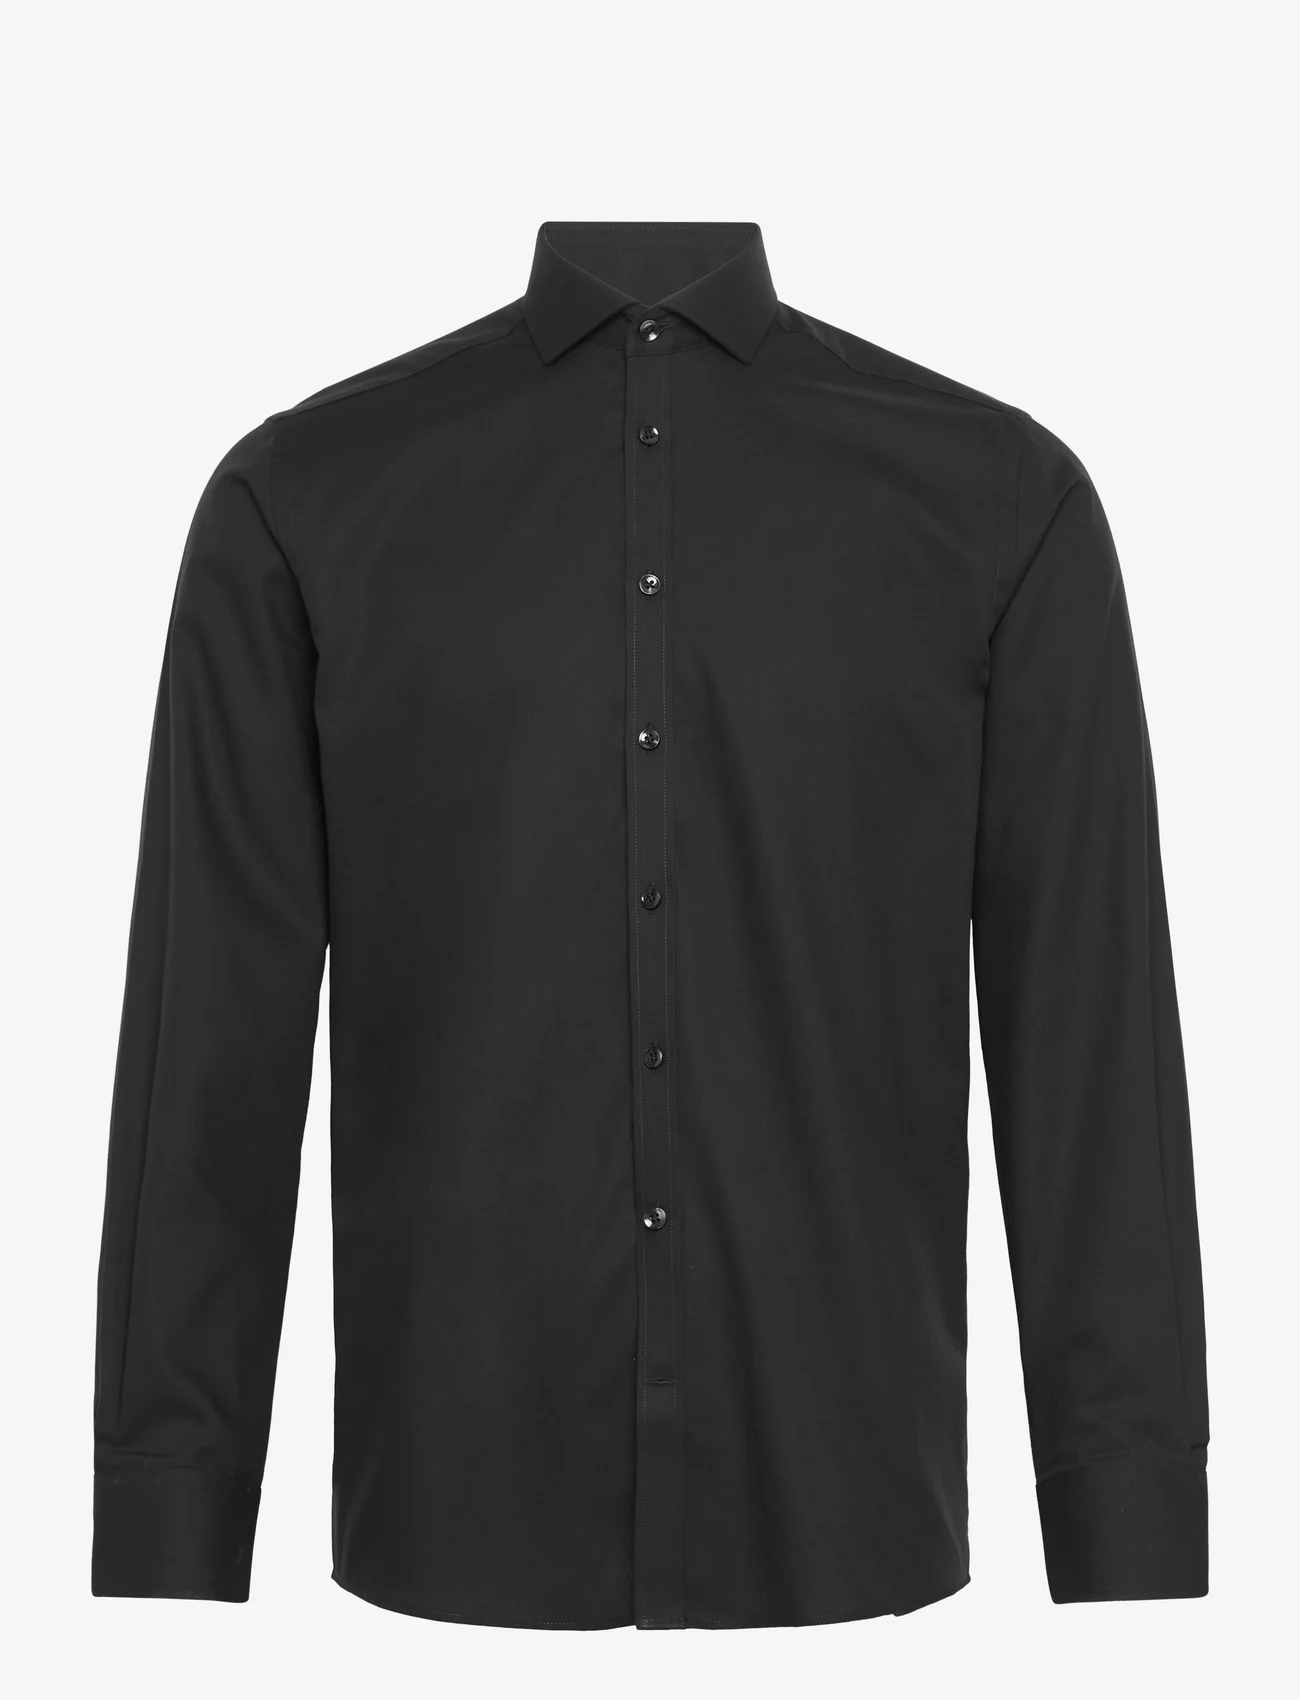 Bruun & Stengade - BS Bratton modern fit shirt - business-hemden - 2202-16044-200 - 0